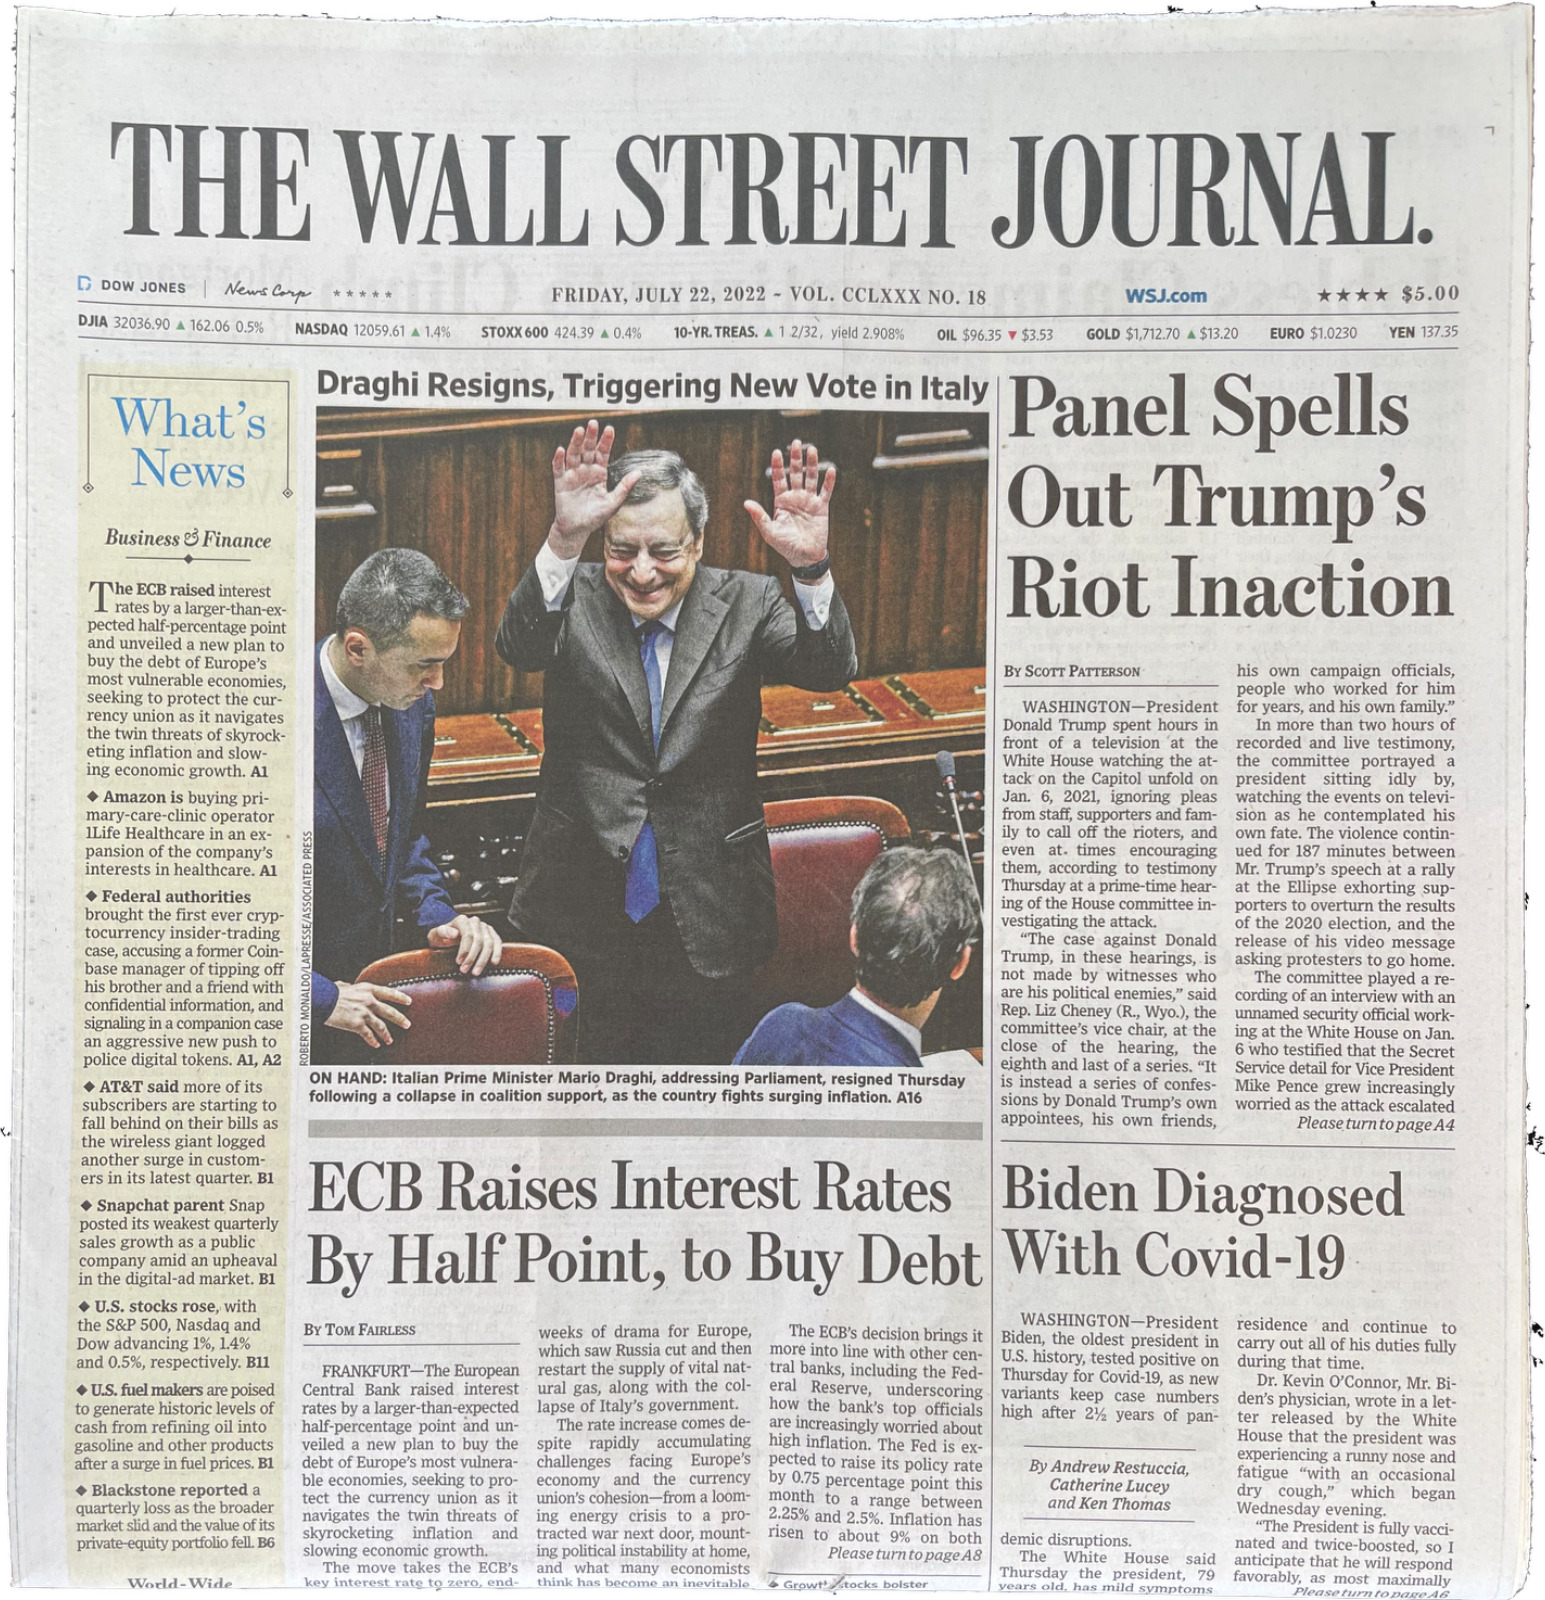 Wall Street Journal - July 22, 2022 - Volume CCLXXX NO. 18